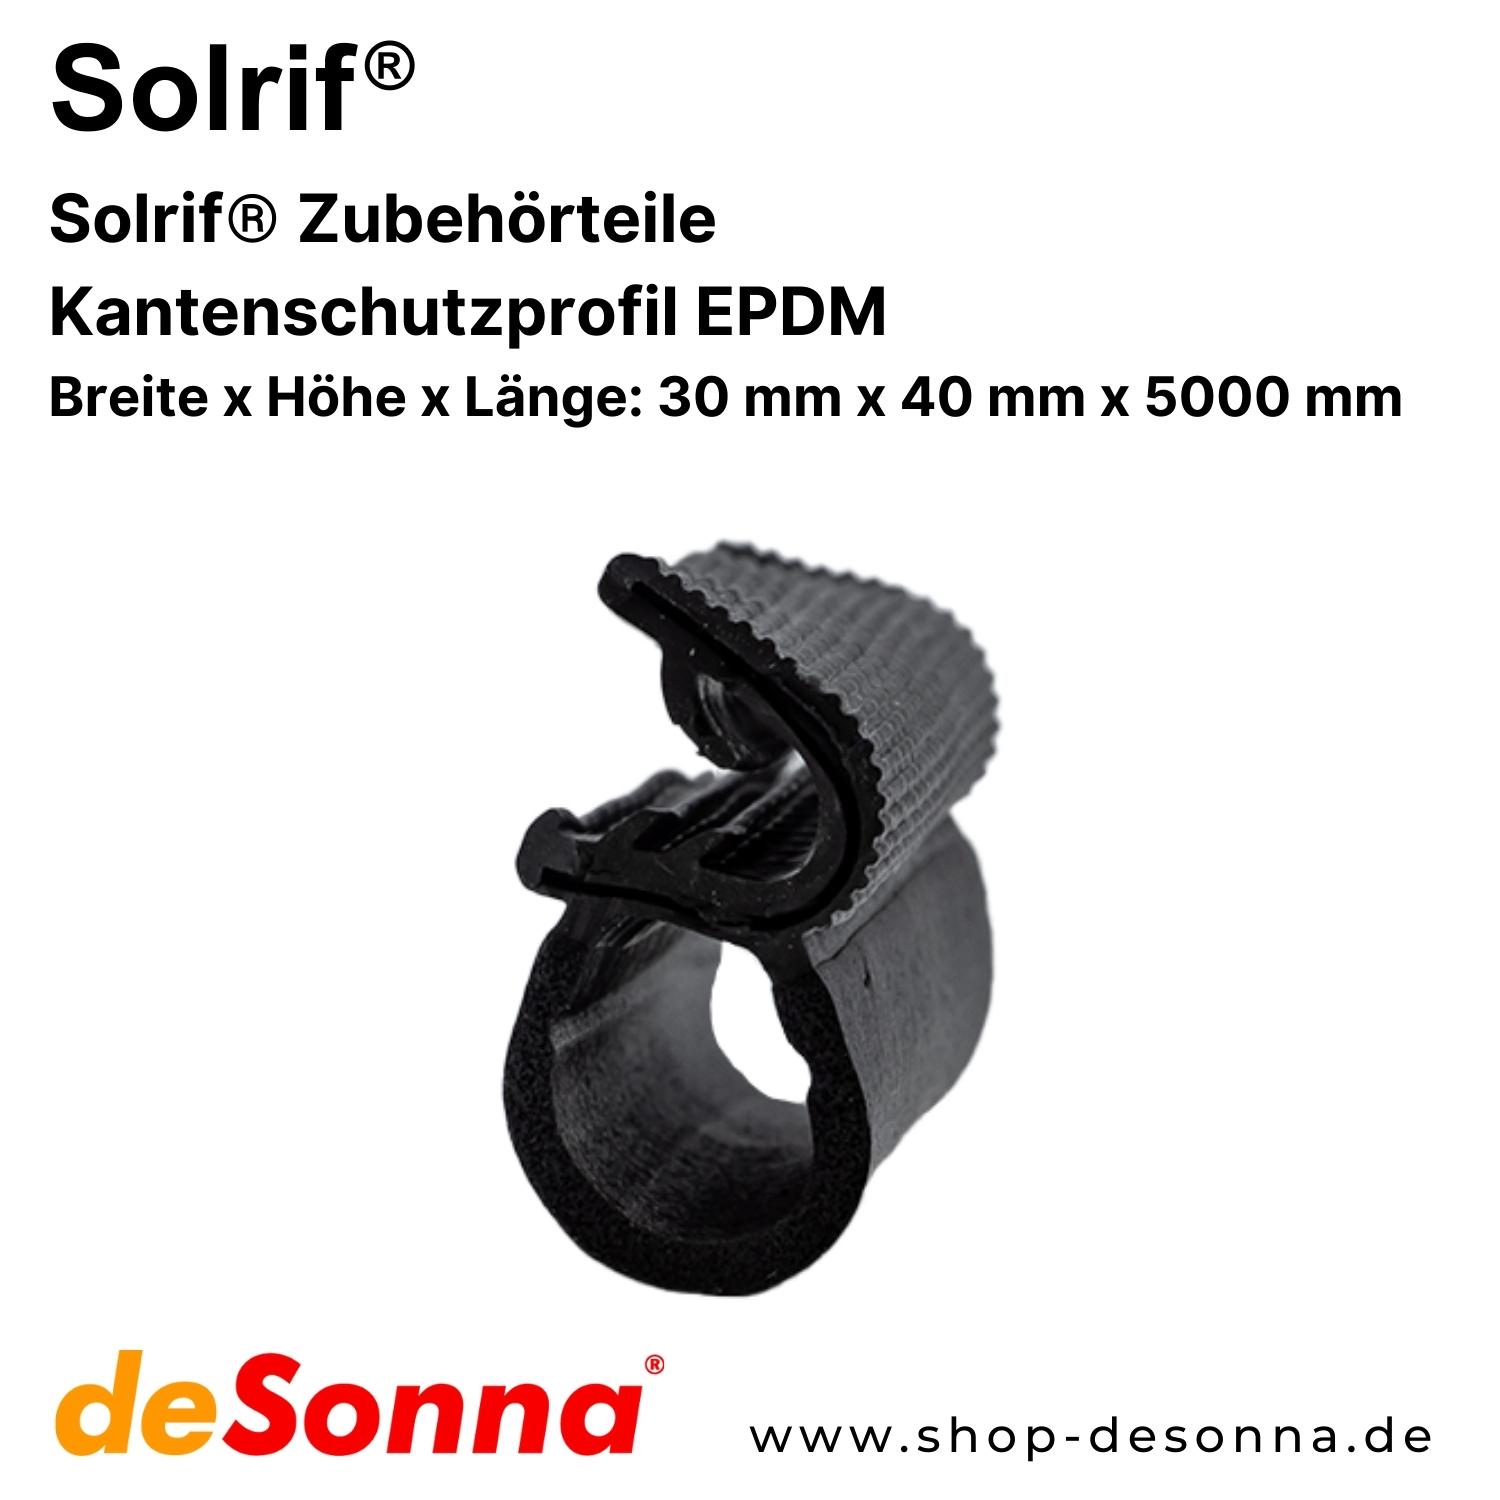 Solrif® Kantenschutzprofil EPDM - Zubehörteile